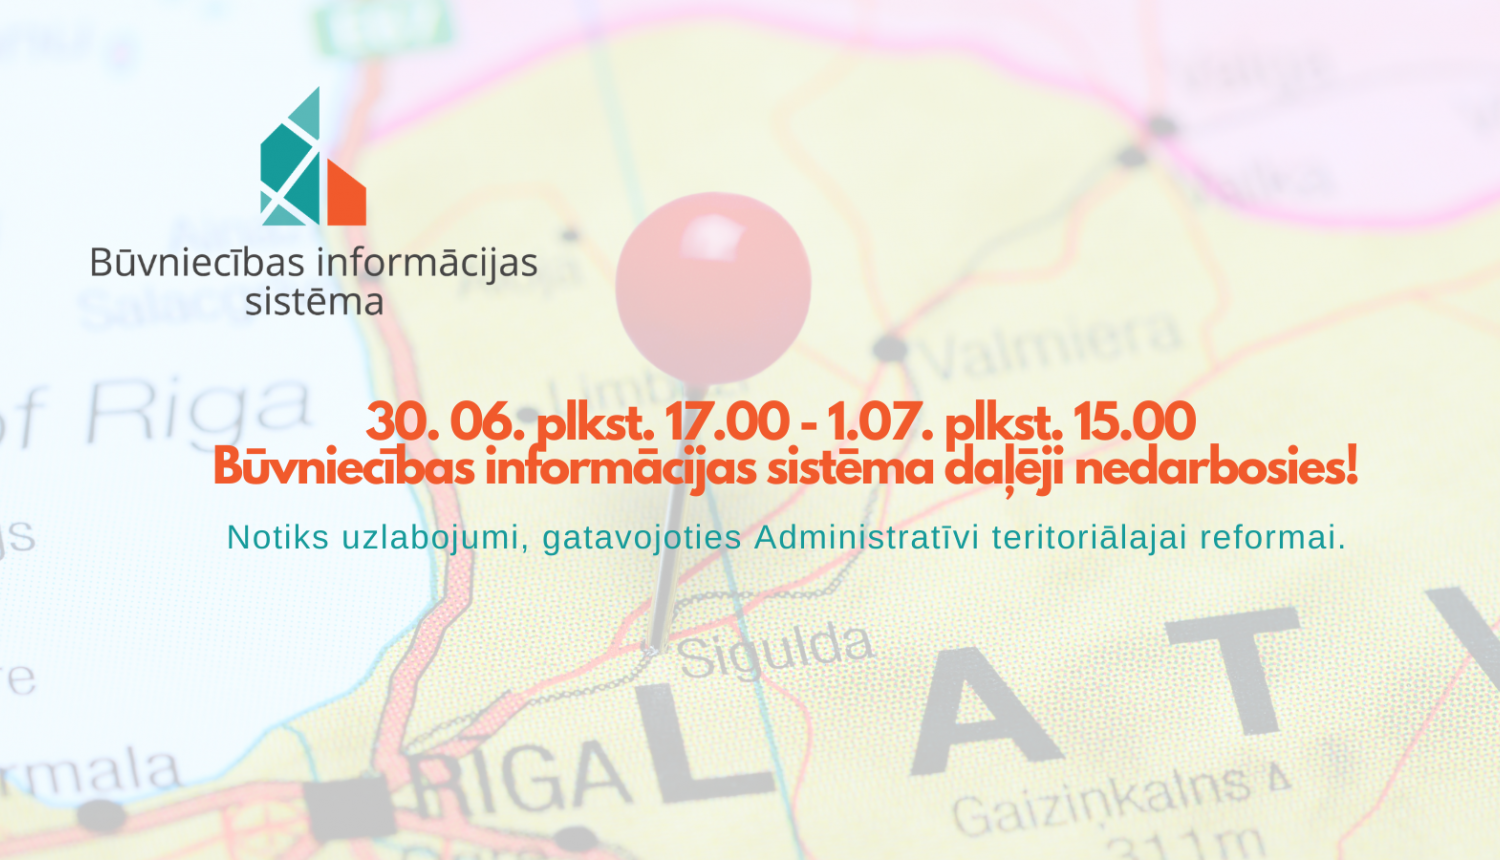 Attēlā Latvijas karte un informācija par Būvniecības informācijas sistēmas darbības traucējumiem